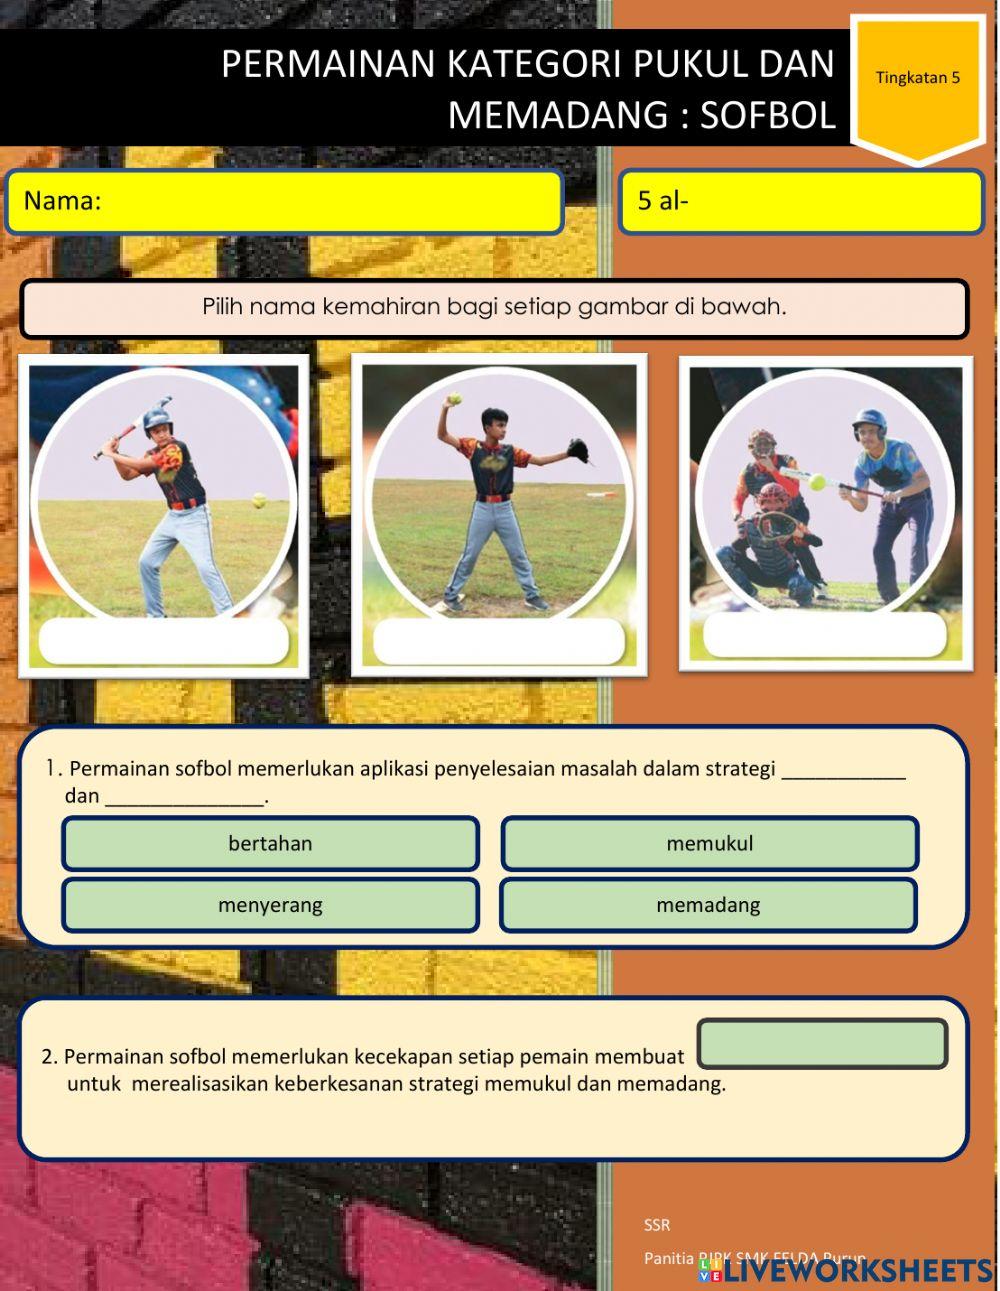 Permainan Kategori Pukul dan Memadang: Sofbol T5